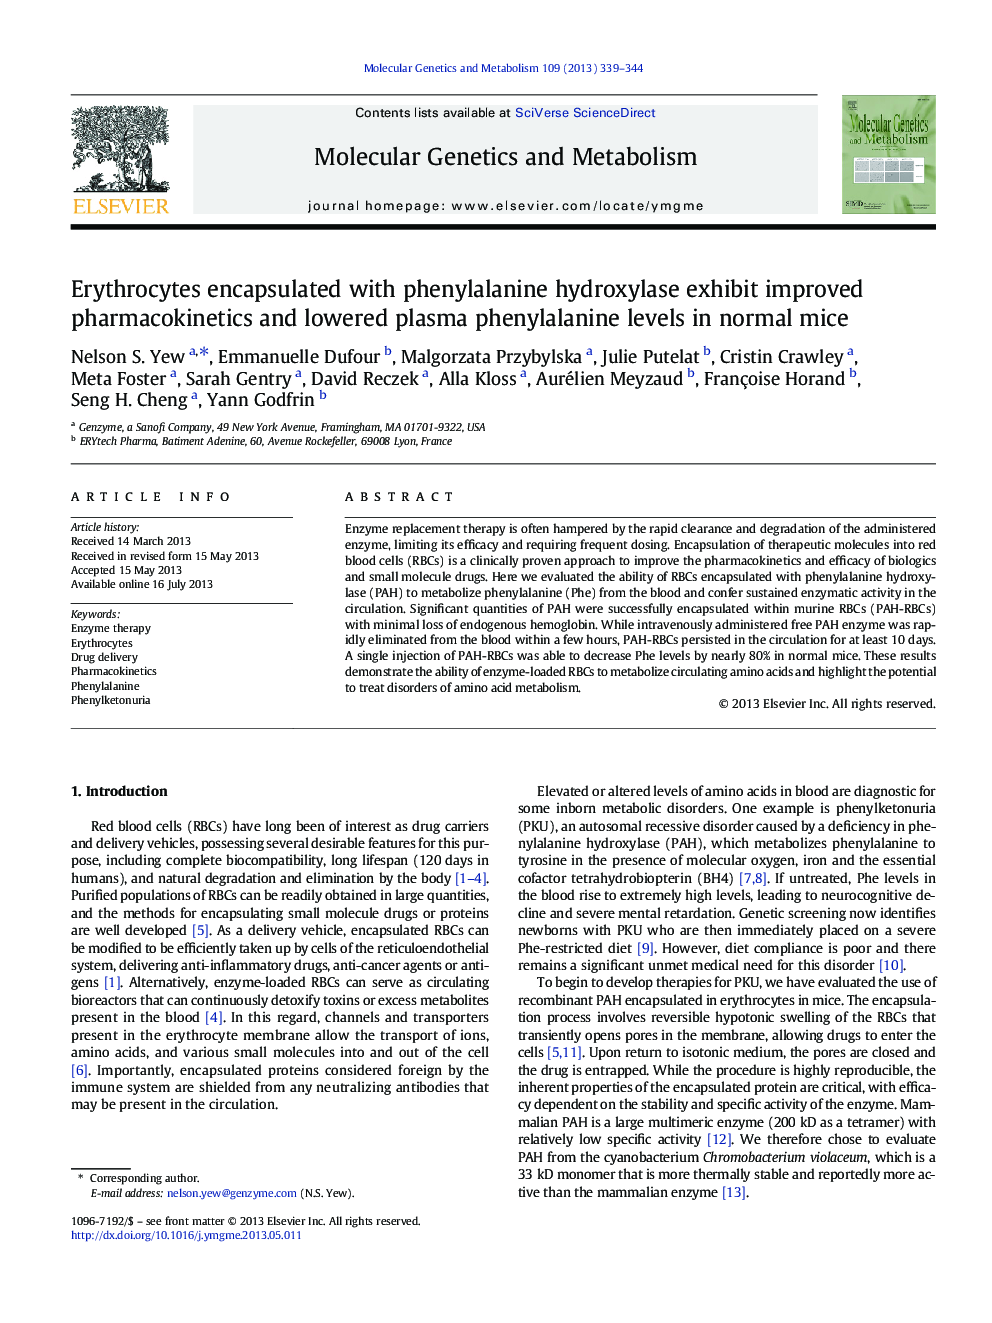 Erythrocytes encapsulated with phenylalanine hydroxylase exhibit improved pharmacokinetics and lowered plasma phenylalanine levels in normal mice